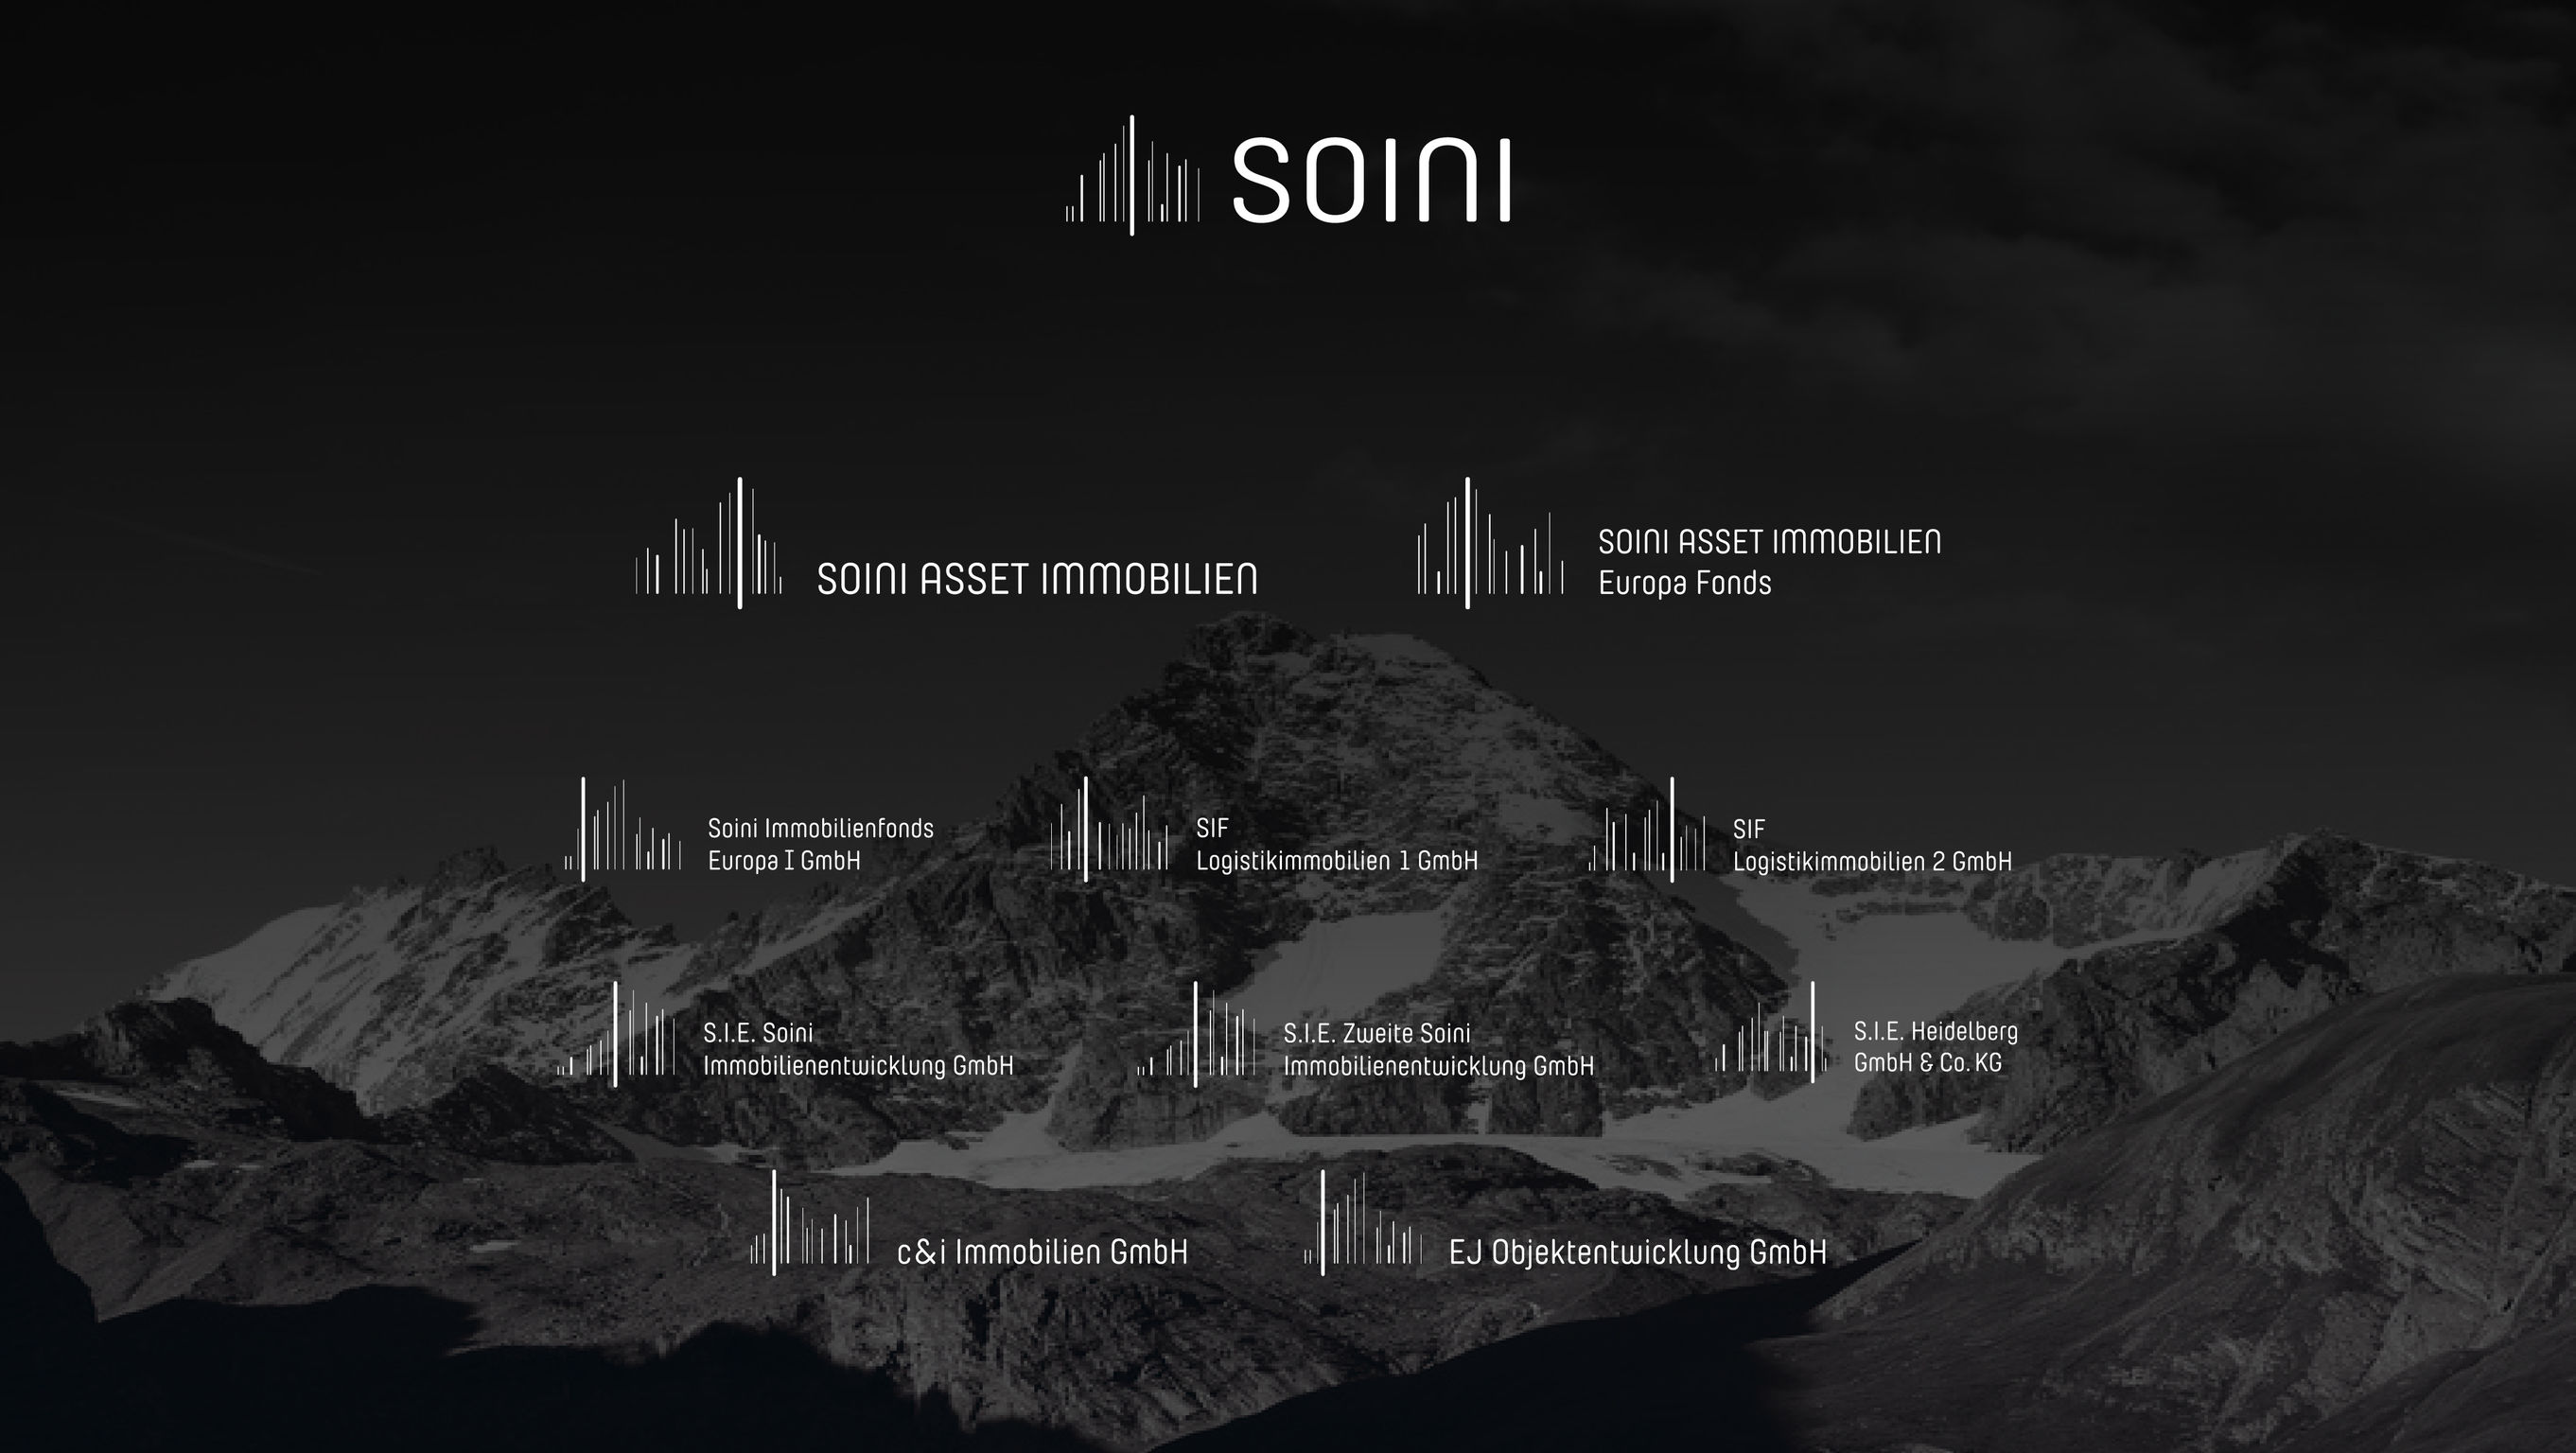 SOINI GmbH